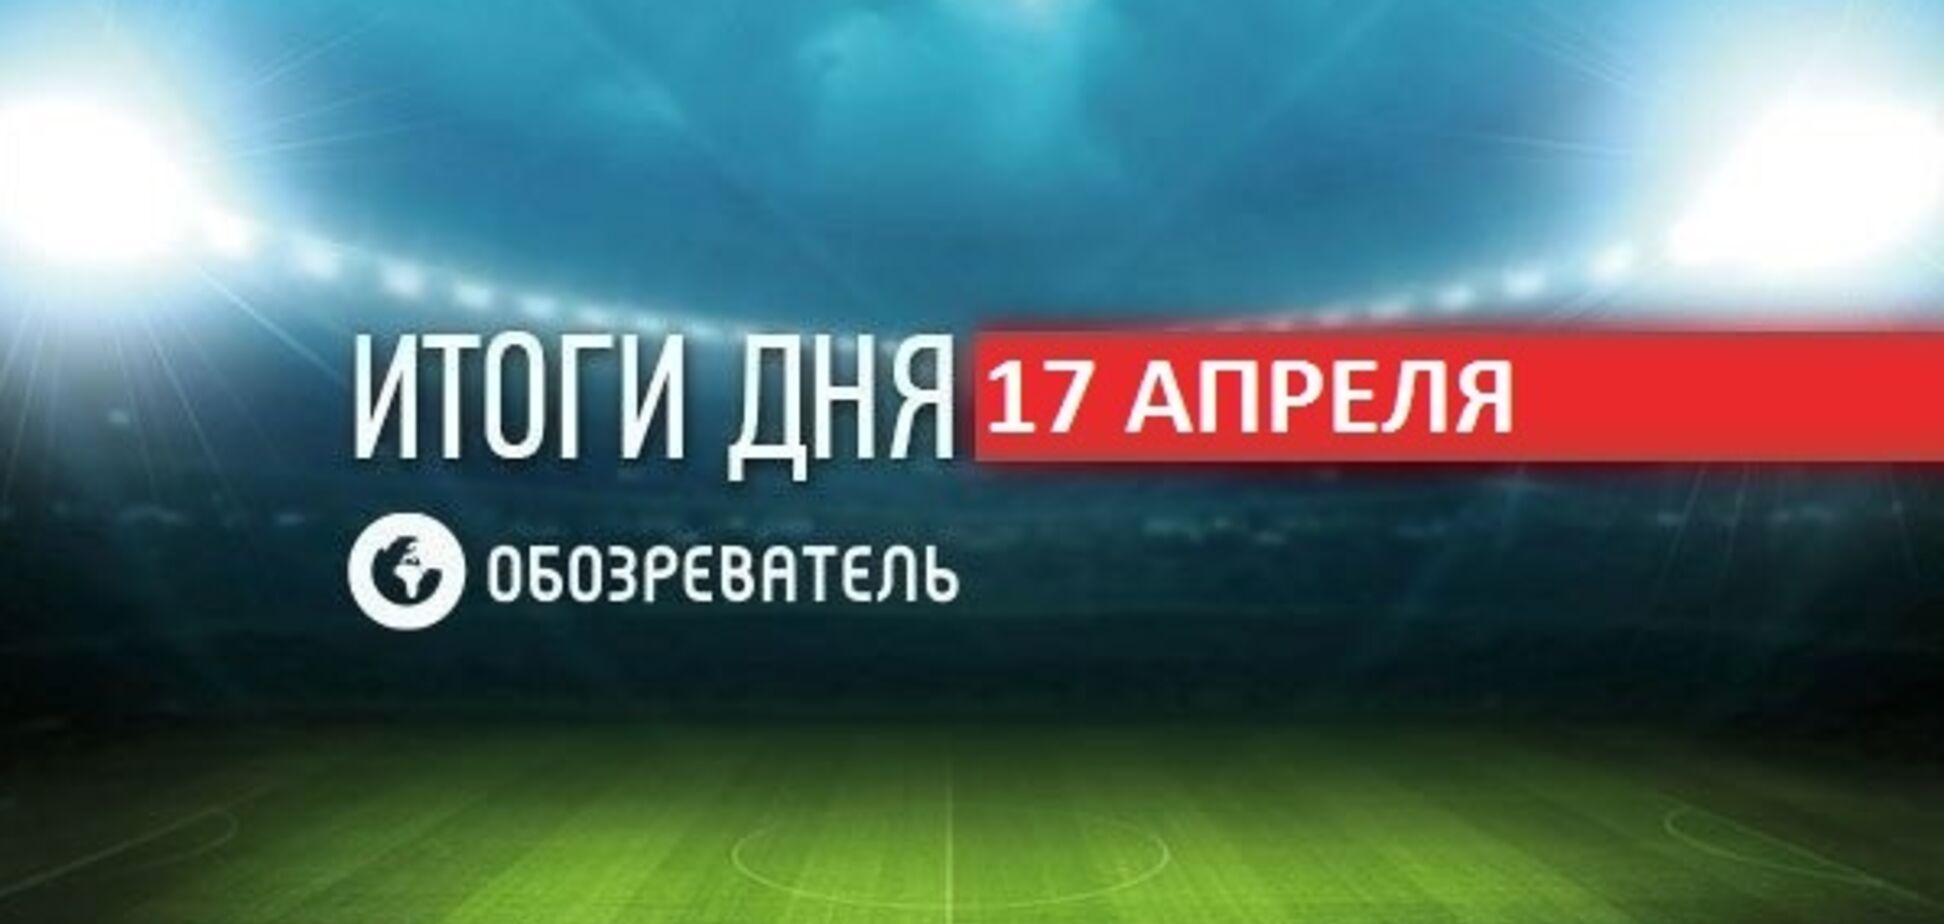 В России наехали на Ломаченко: спортивные итоги 17 апреля